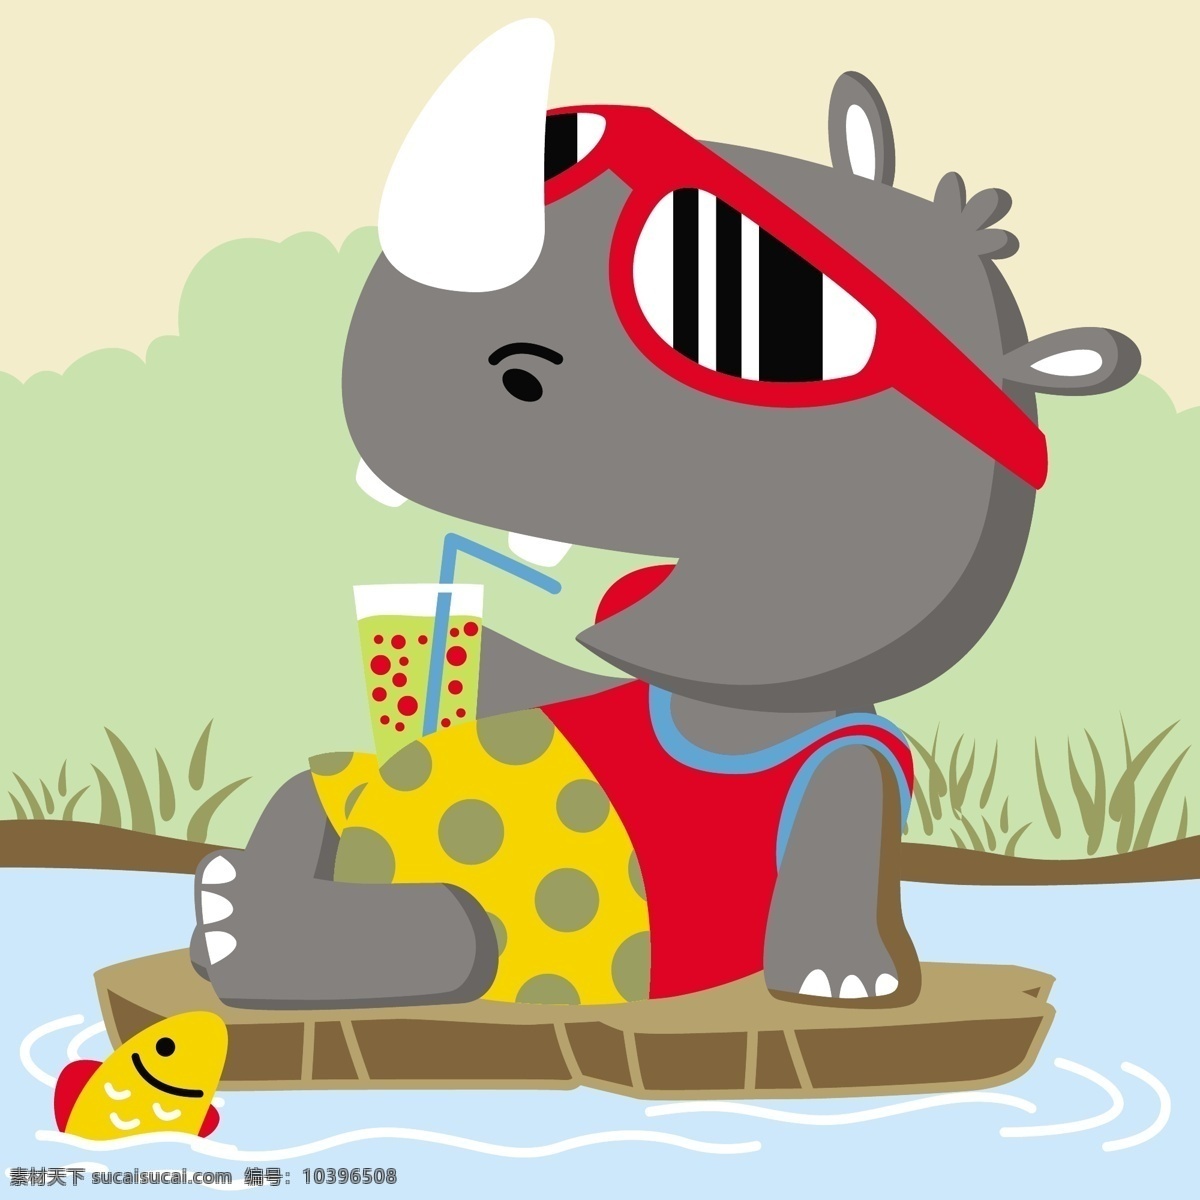 犀牛 河 上 喝 饮料 动漫 可爱 图 手绘 儿童动漫 犀牛喝饮料